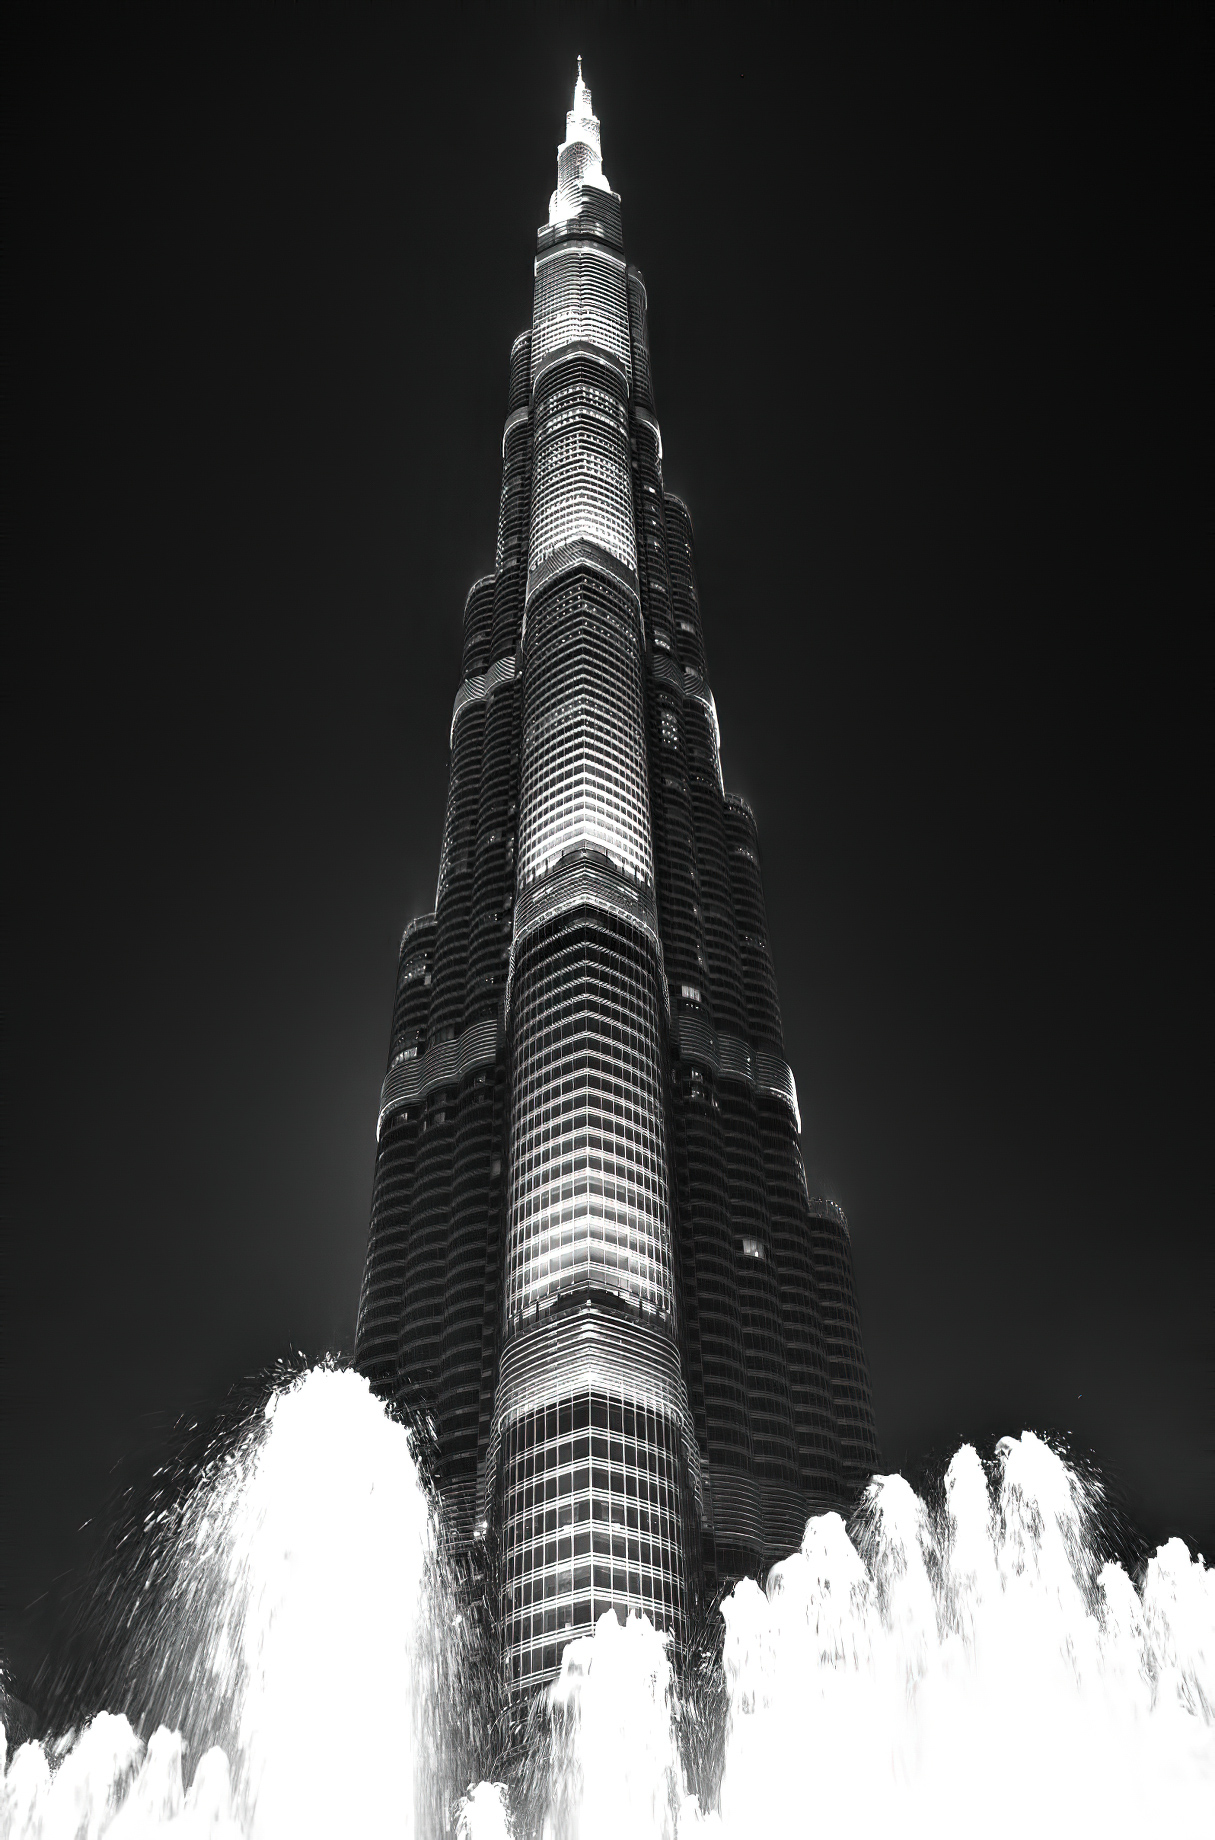 Armani Hotel Dubai – Burj Khalifa, Dubai, UAE – Burj Khalifa Tower